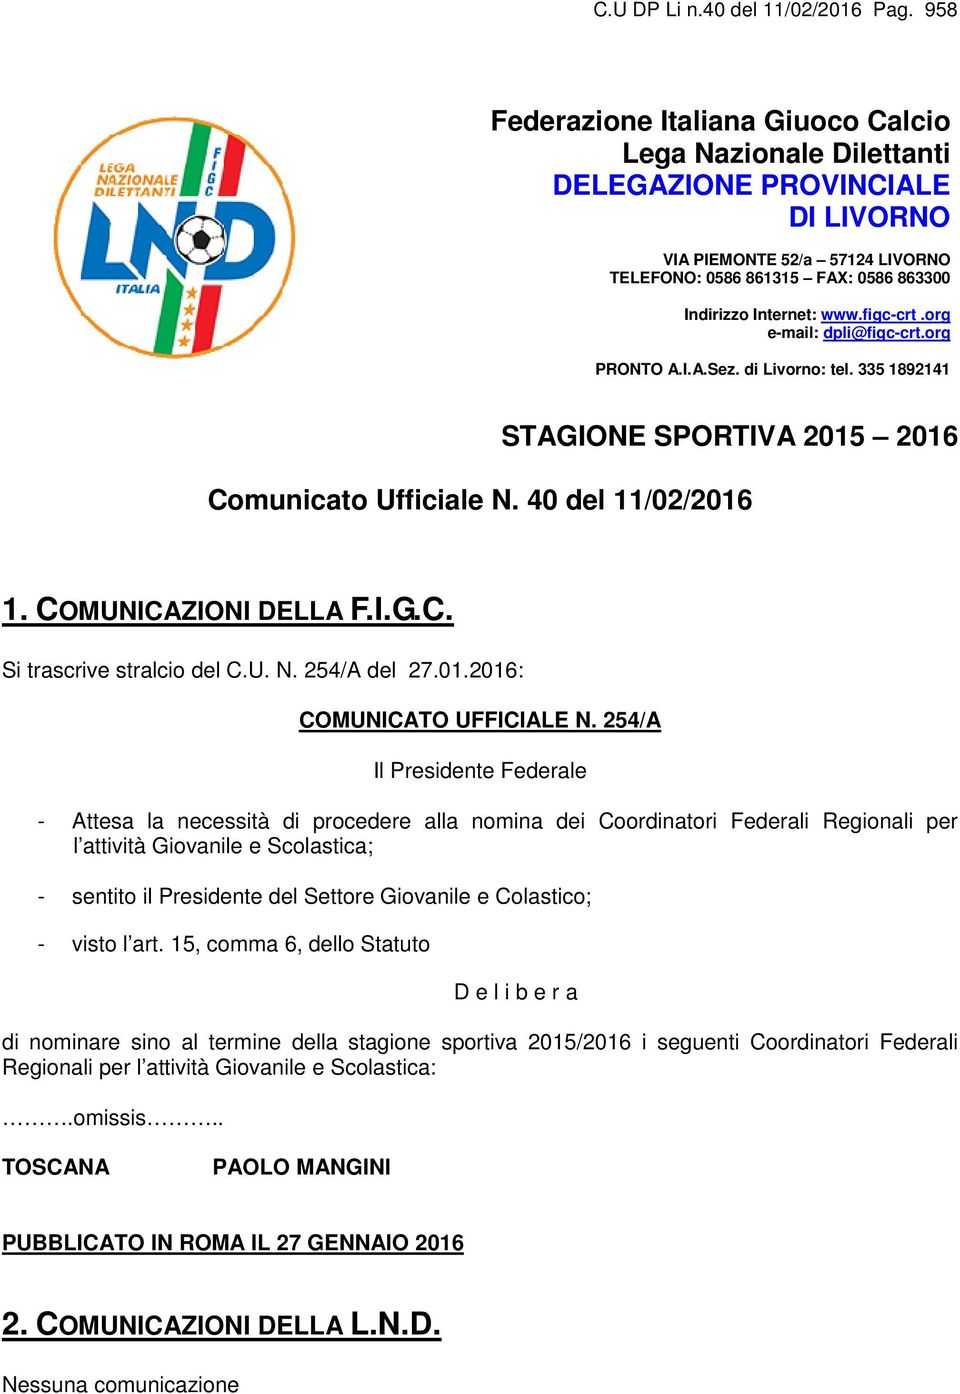 org e-mail: dpli@figc-crt.org PRONTO A.I.A.Sez. di Livorno: tel. 335 1892141 STAGIONE SPORTIVA 2015 2016 Comunicato Ufficiale N. 40 del 11/02/2016 1. COMUNICAZIONI DELLA F.I.G.C. Si trascrive stralcio del C.